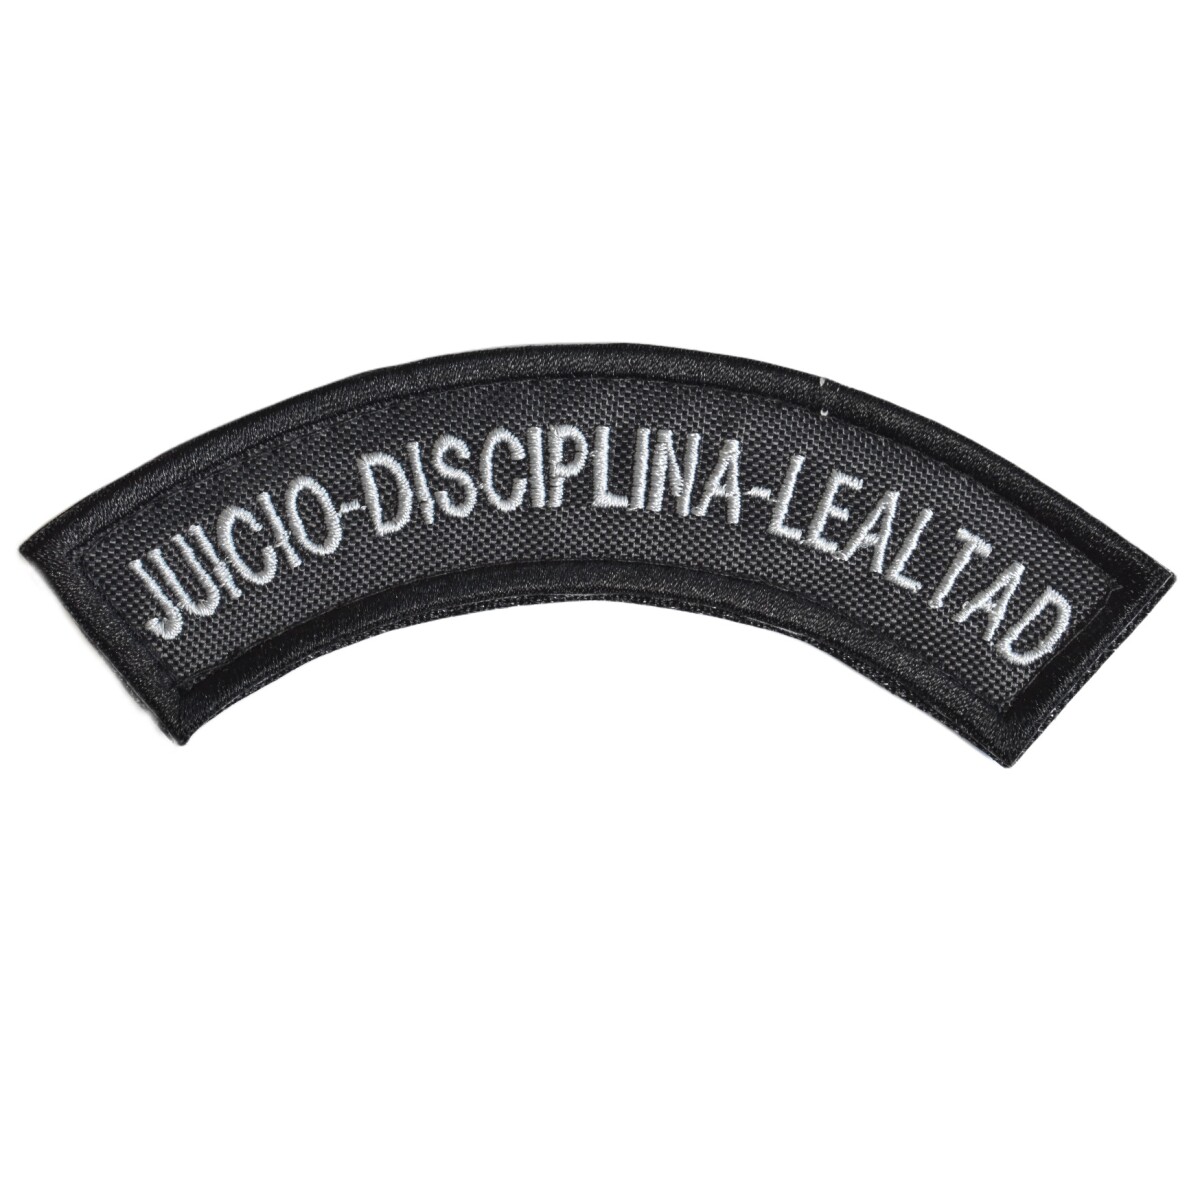 Parche bordado de brazo - JUICIO DISCIPLINA LEALTAD - Gris 